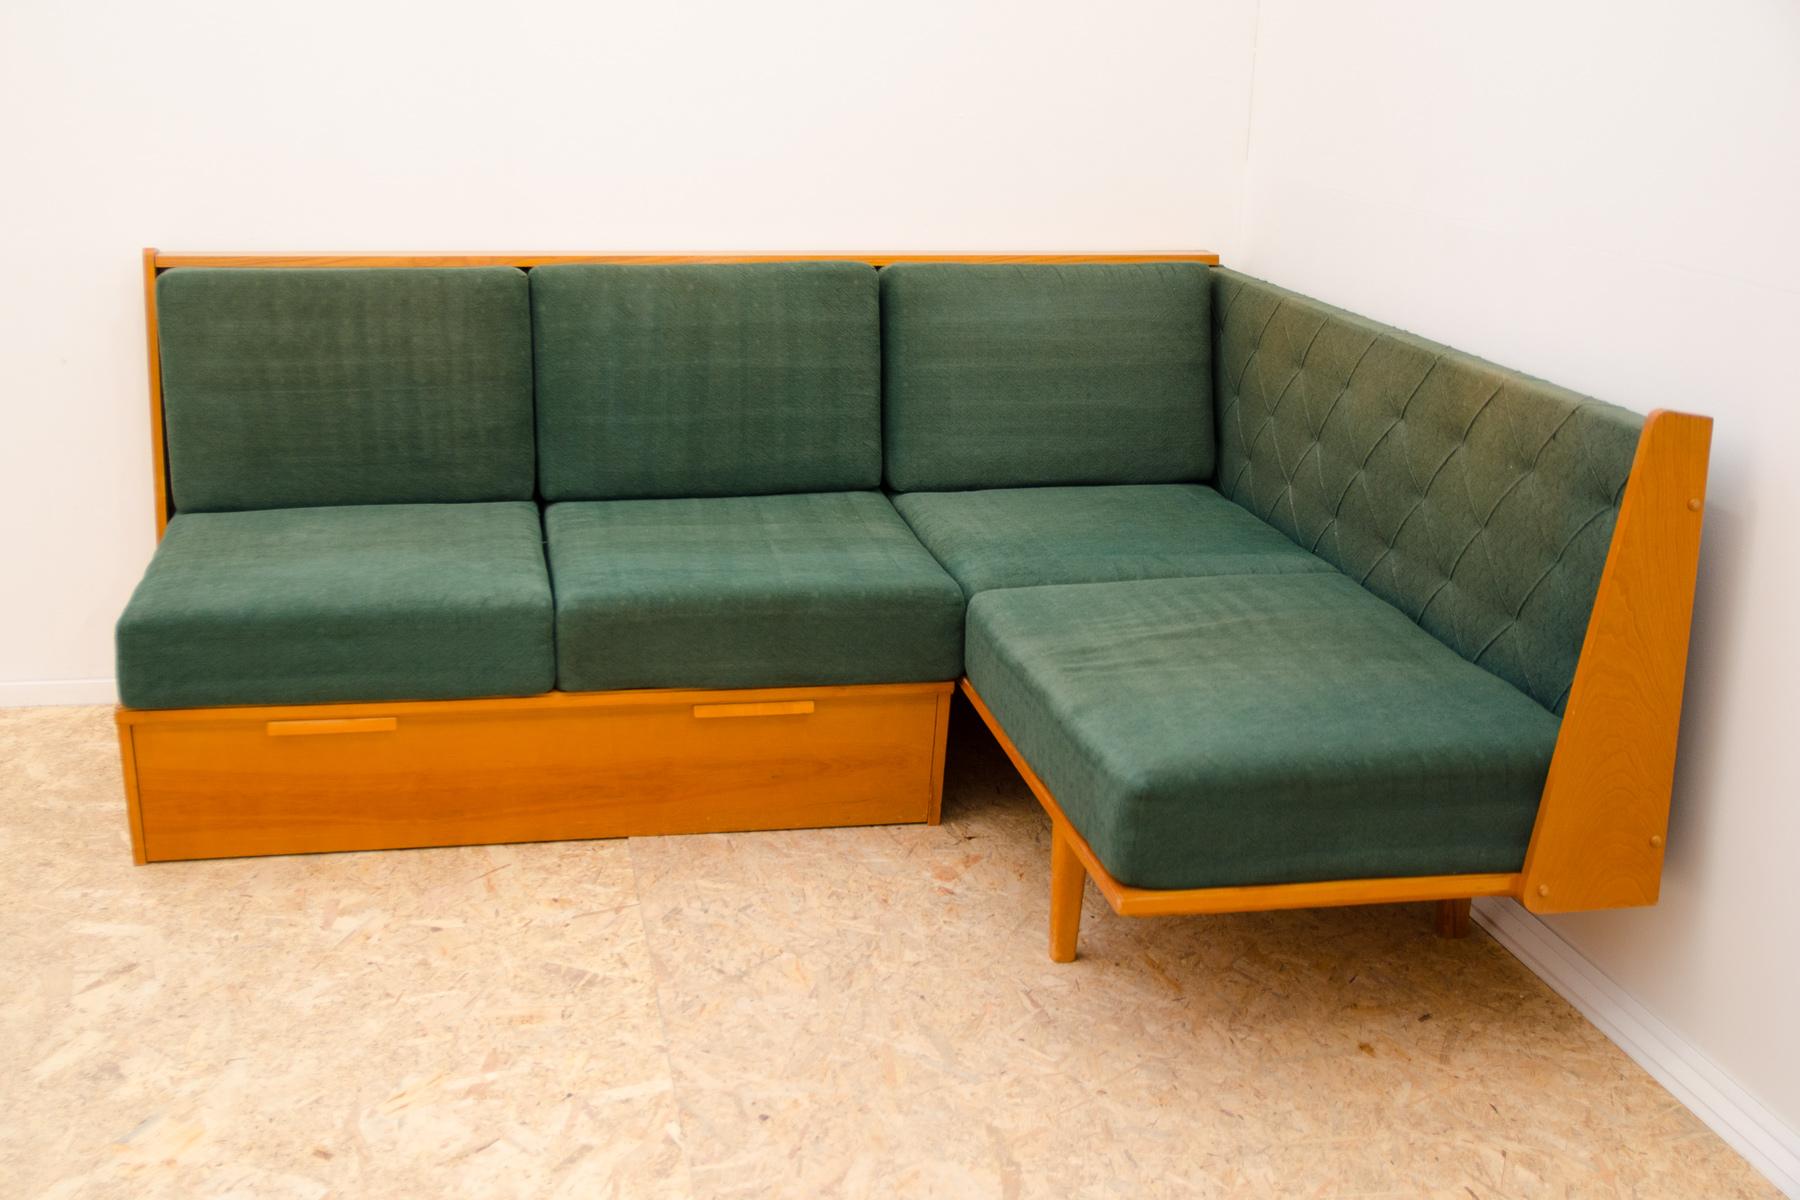 Ecksofa aus der Mitte des Jahrhunderts mit Stauraum, hergestellt in der ehemaligen Tschechoslowakei in den 1960er Jahren.

Dieses Sofa hat einen Rahmen aus furniertem Buchenholz und Stauraum für Bettwäsche. Das Sofa ist in gutem Vintage-Zustand, mit